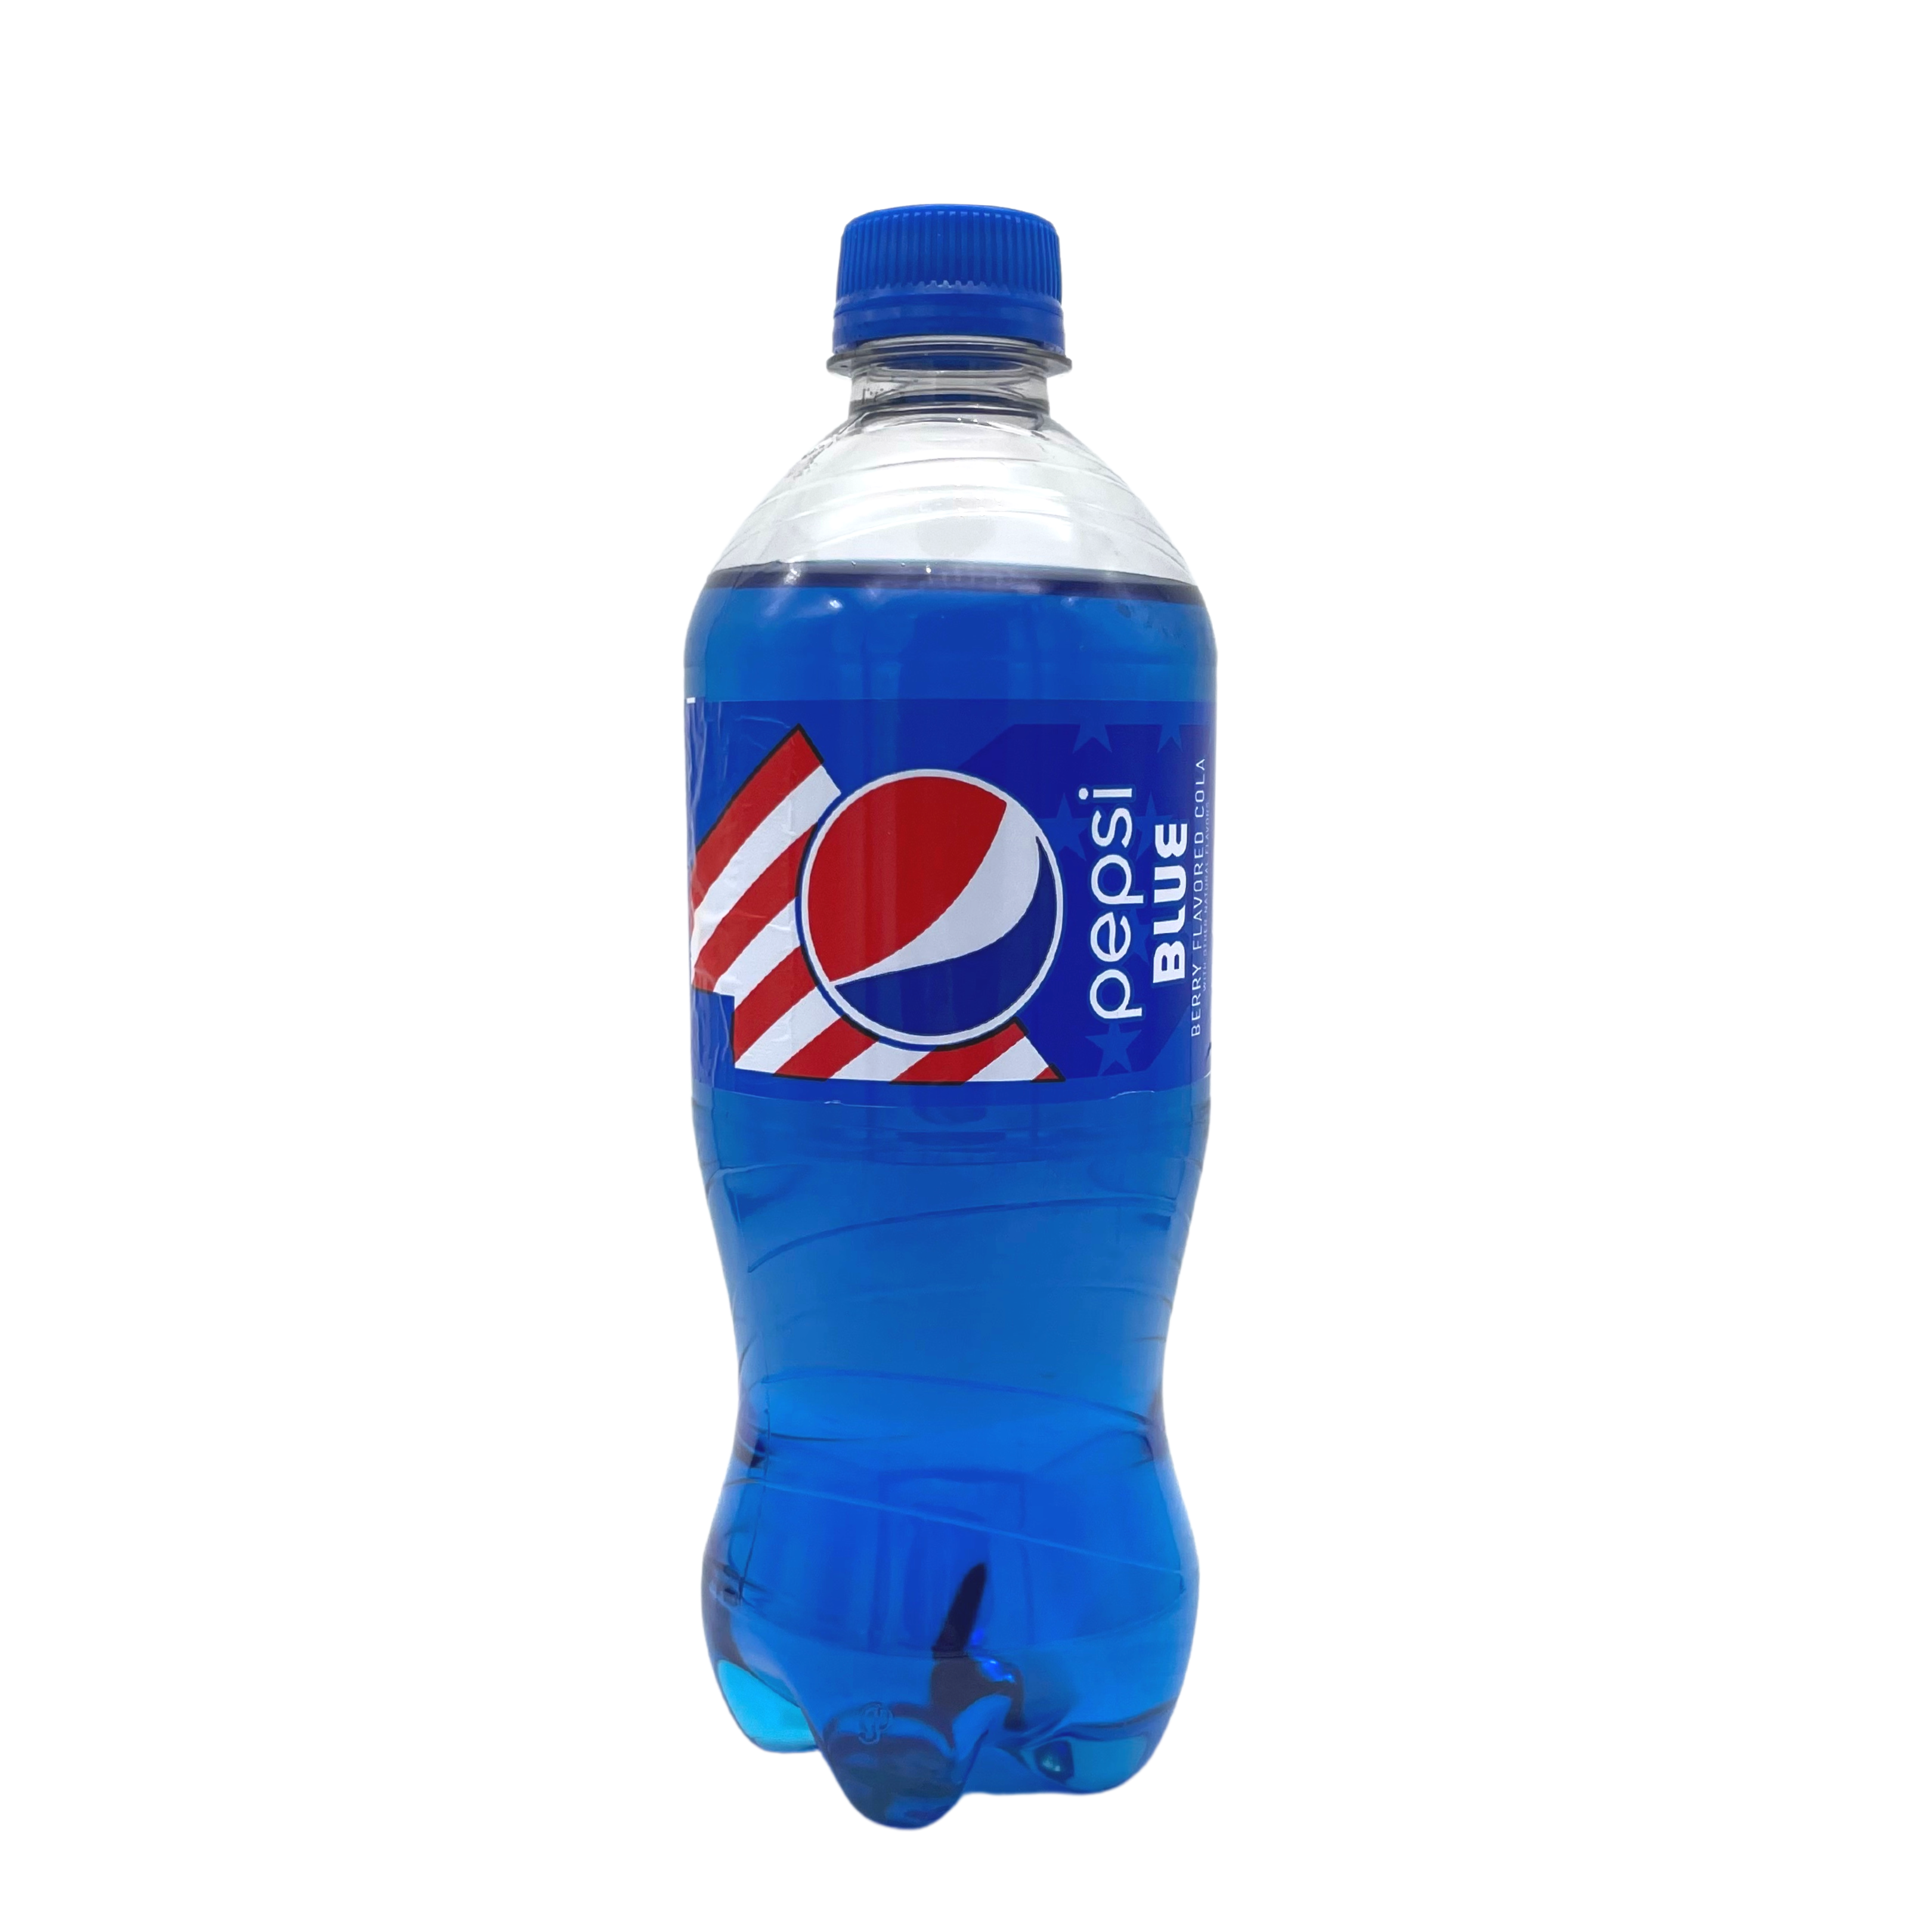 Pepsi - Blue Berry / Mirtillo 591 ml